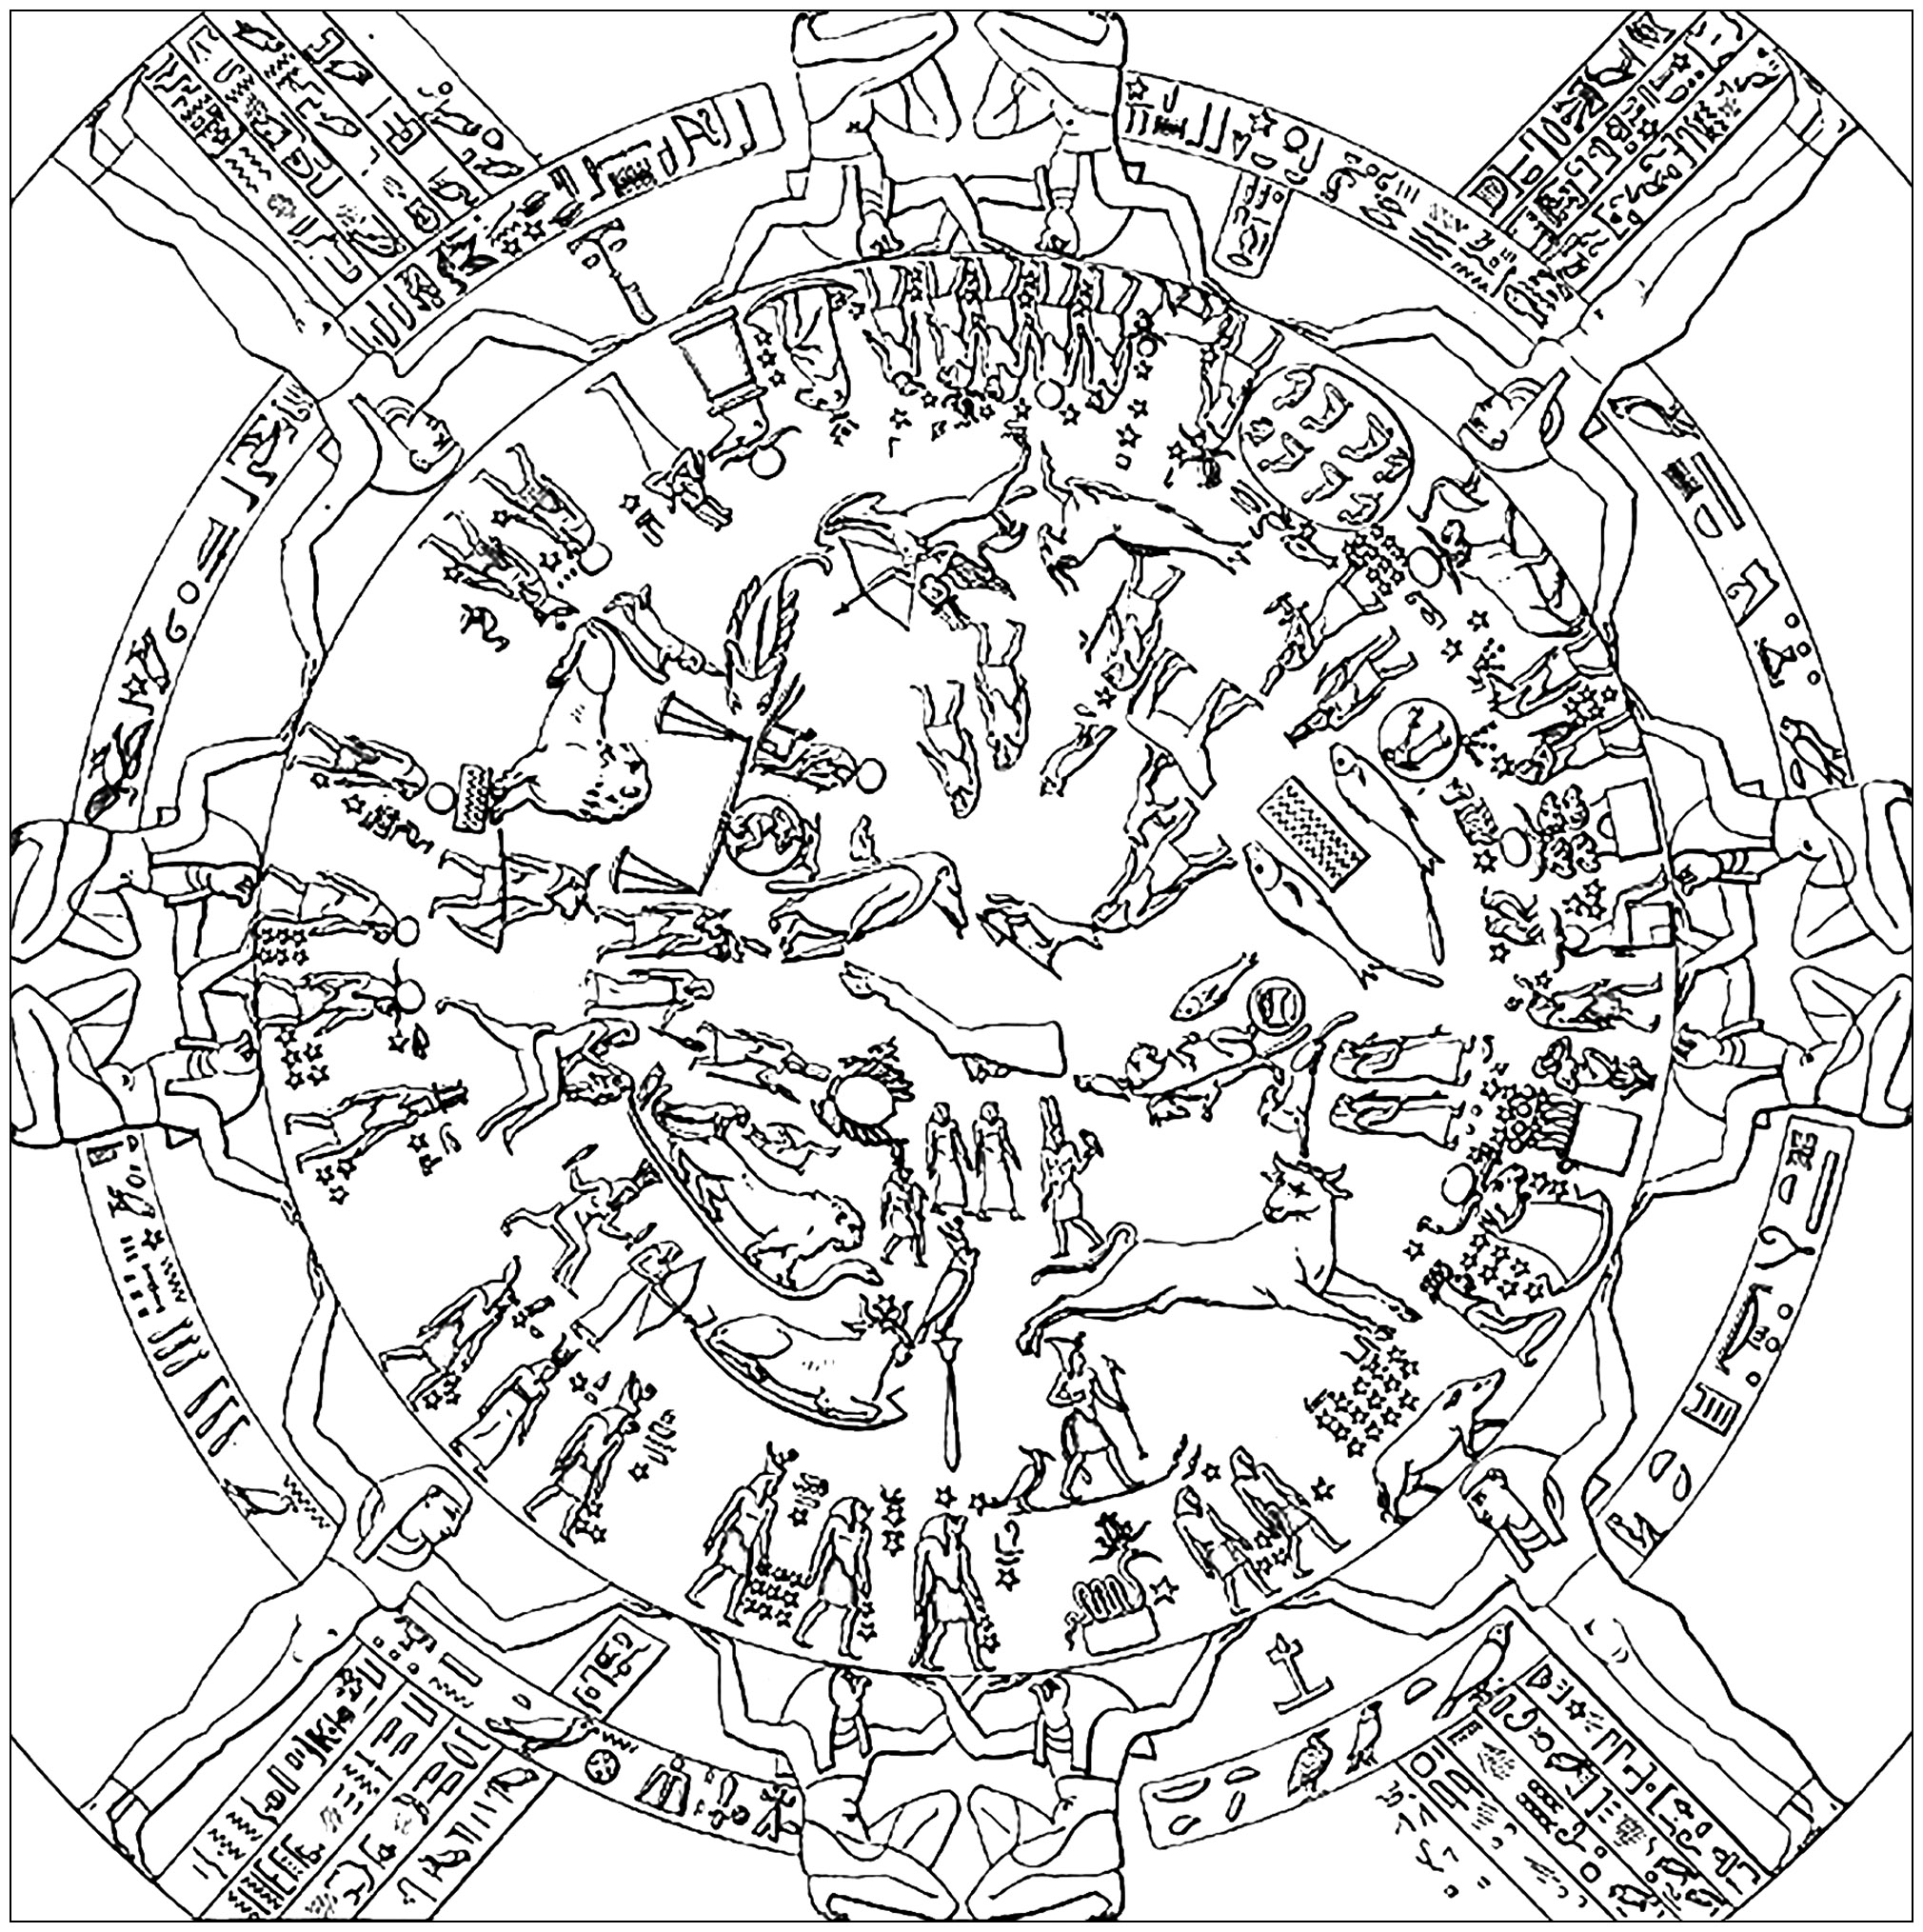 Ausmalbild nach der ersten Zeichnung des Tierkreises von Dendera (1802). Der Dendera-Zodiakus ist eine der am besten erhaltenen antiken Darstellungen der beobachtbaren Sterne. Obwohl er viele der heute bekannten Tierkreissymbole enthält, ist er eher als Sternenkarte denn als astrologisches Diagramm zu bezeichnen. Sie zeigt alle fünf Planeten, die den alten Ägyptern bekannt waren, in einer Ausrichtung, die einmal alle tausend Jahre stattfindet, sowie eine Sonnen- und Mondfinsternis. Die Ausrichtung der Planeten ermöglicht es Astrophysikern, den abgebildeten Himmel auf die Zeit zwischen dem 15. Juni und dem 15. August 50 v. Chr. zu datieren.